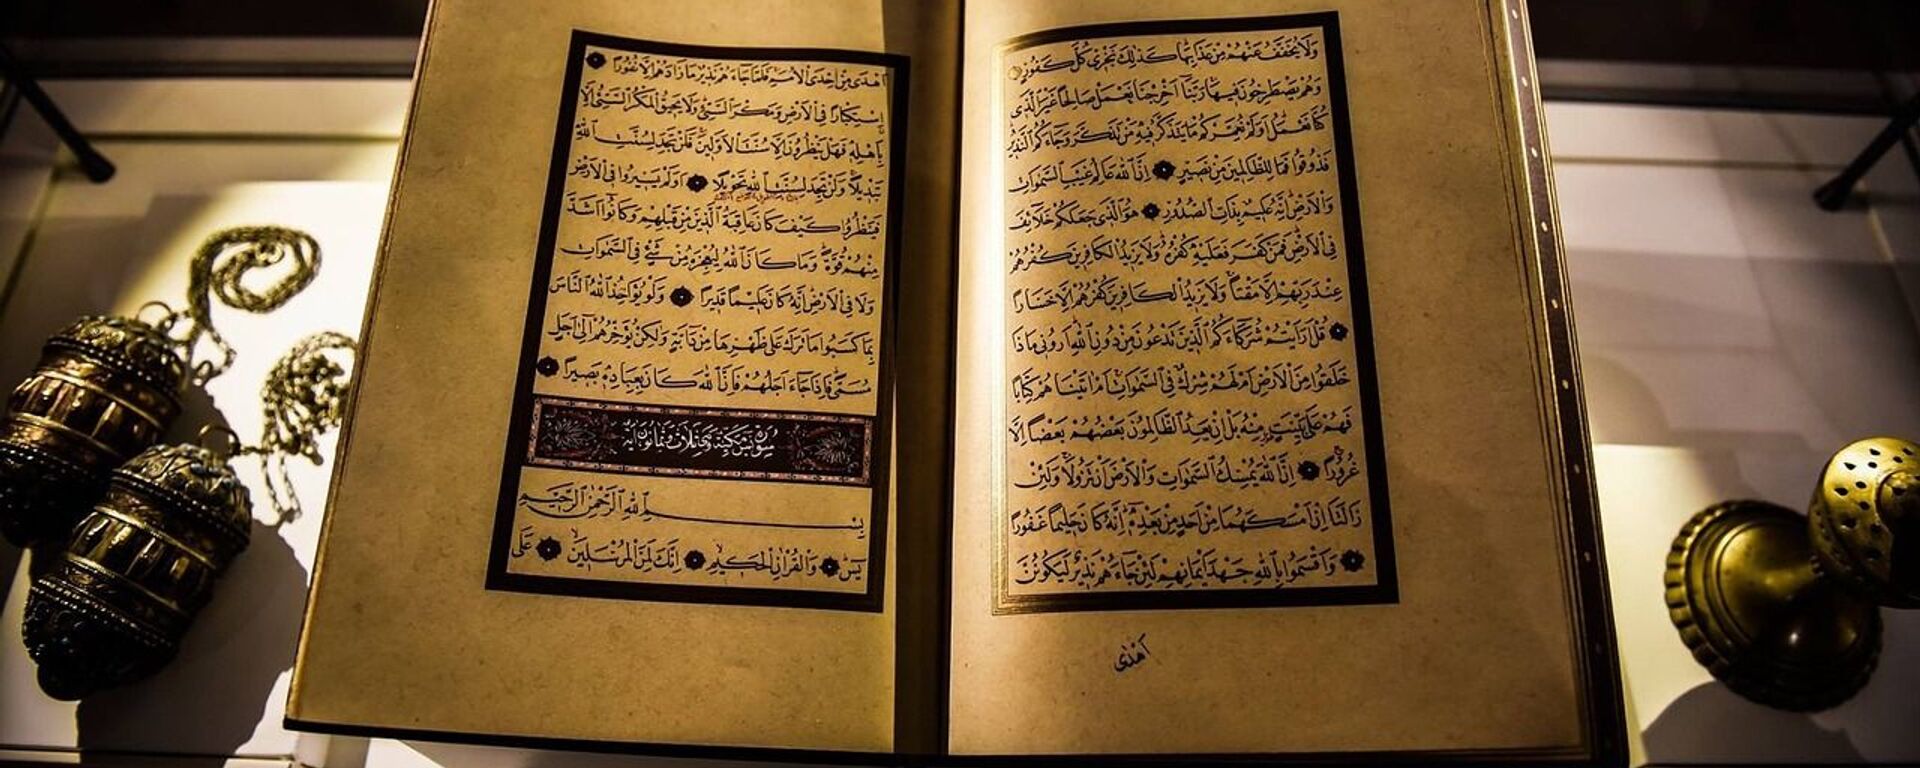 El Corán, libro sagrado del islam - Sputnik Mundo, 1920, 09.01.2020